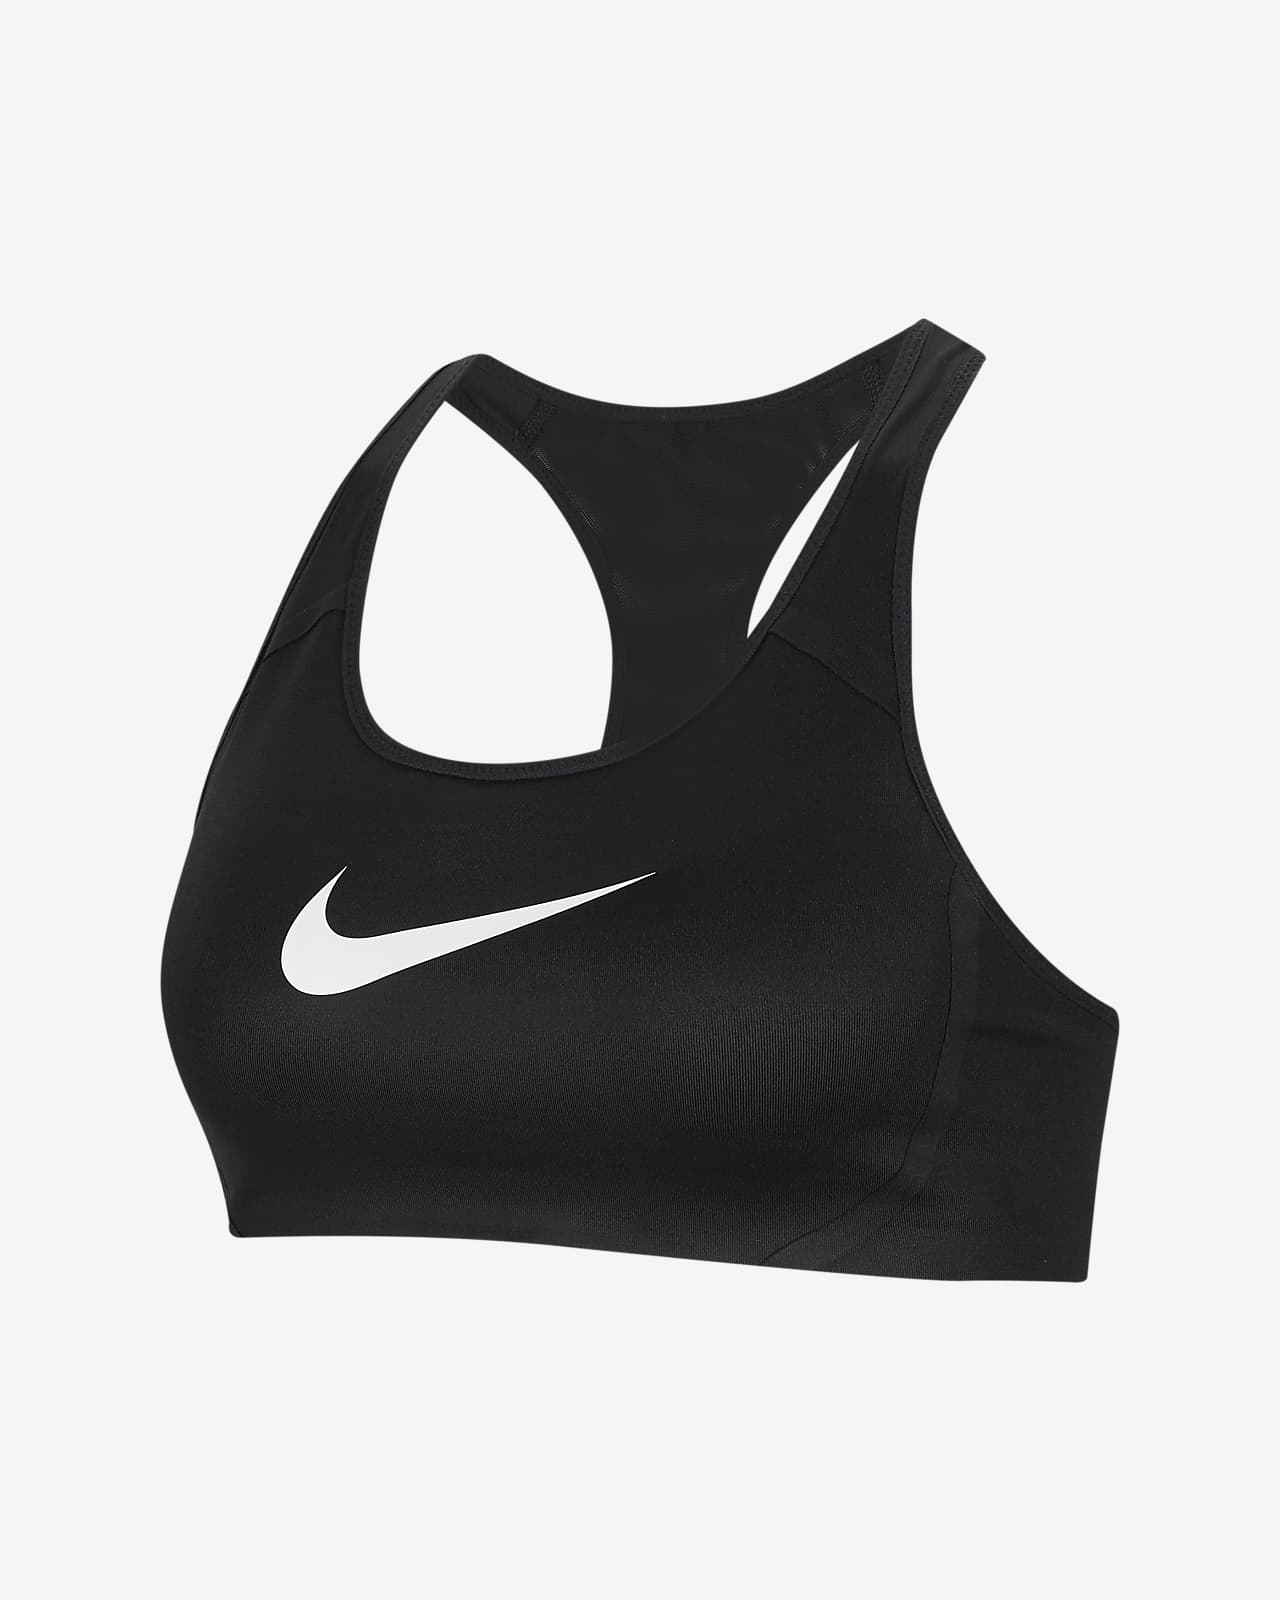 Bra deportivo sin almohadillas de alta sujeción para mujer Nike Victory Shape